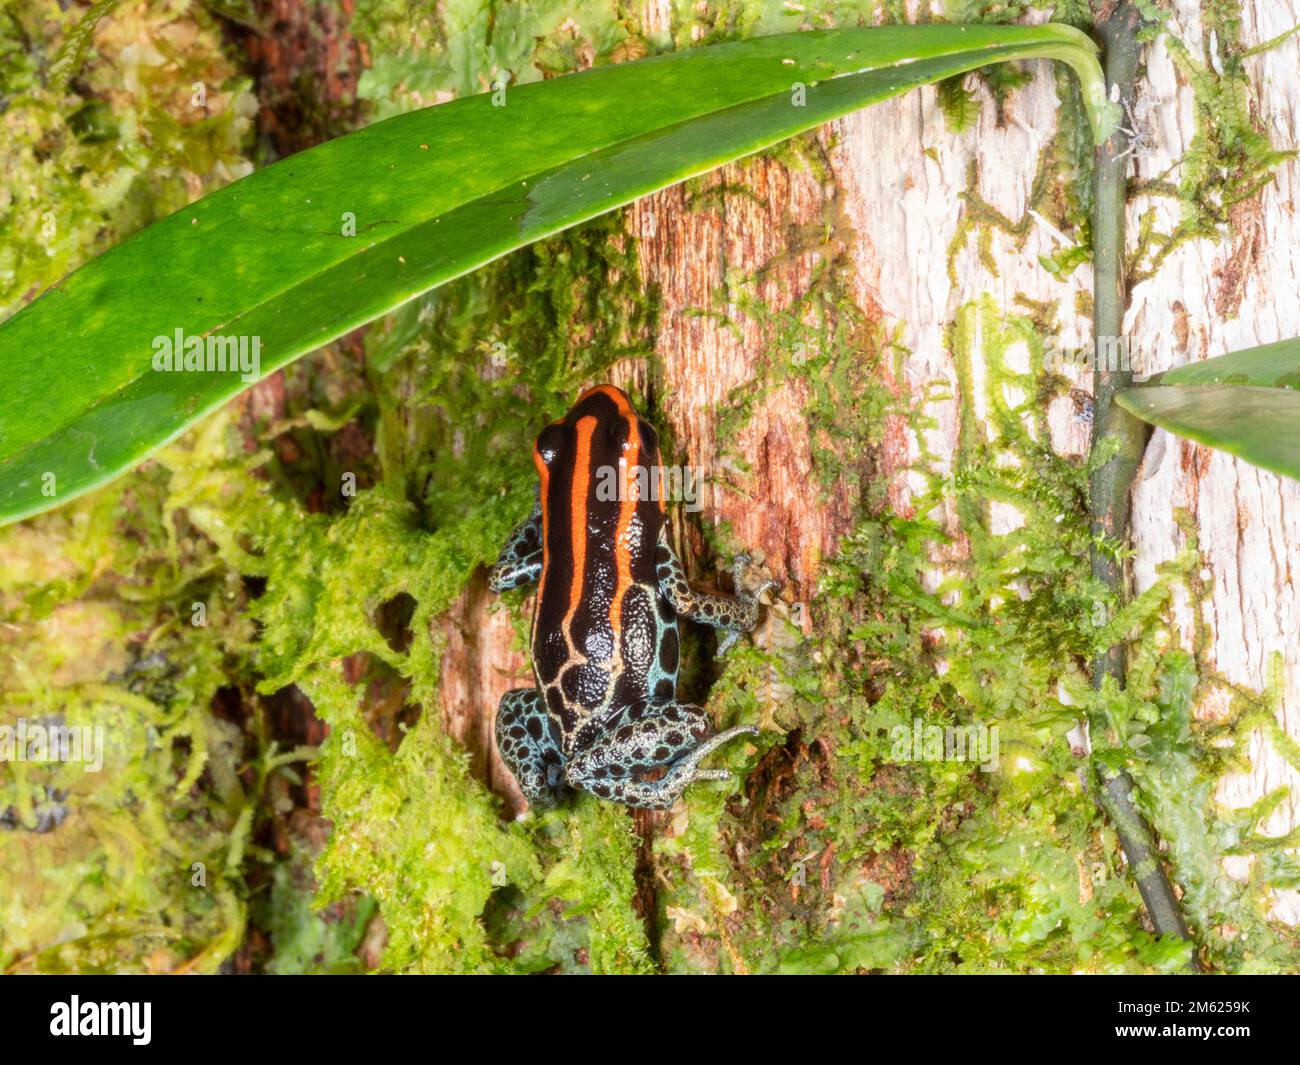 Grenouille réticulée (Ranitomeya ventrimaculata) escalade d'un tronc d'arbre dans le sous-étage de la forêt tropicale, province d'Orellana, Équateur Banque D'Images